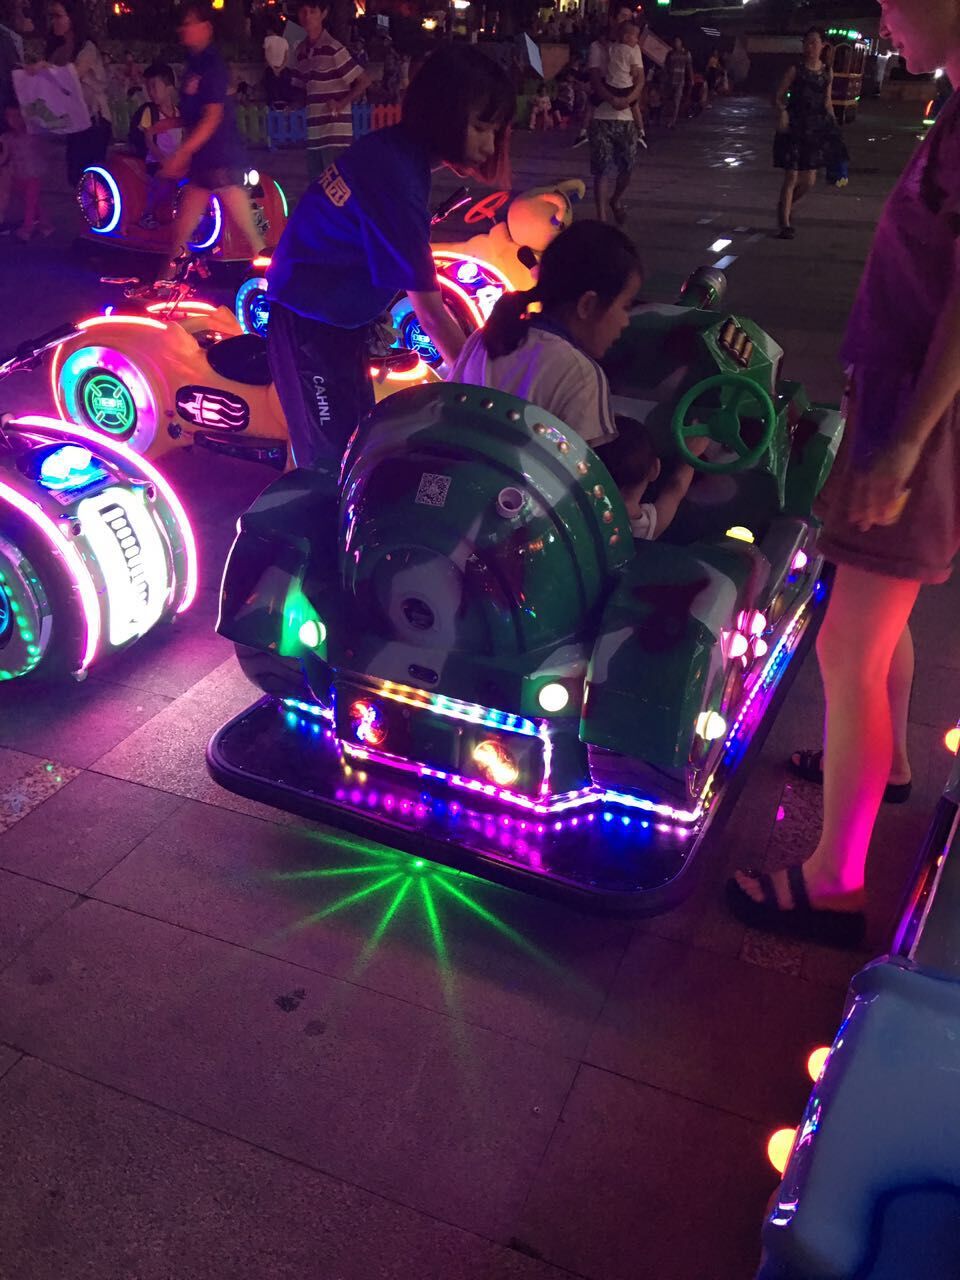 深圳市广场儿童碰碰车兔子大象坦克泡泡车厂家广场儿童双人亲子碰碰车坦克泡泡车游乐设备电动玩具车 广场儿童碰碰车兔子大象坦克泡泡车